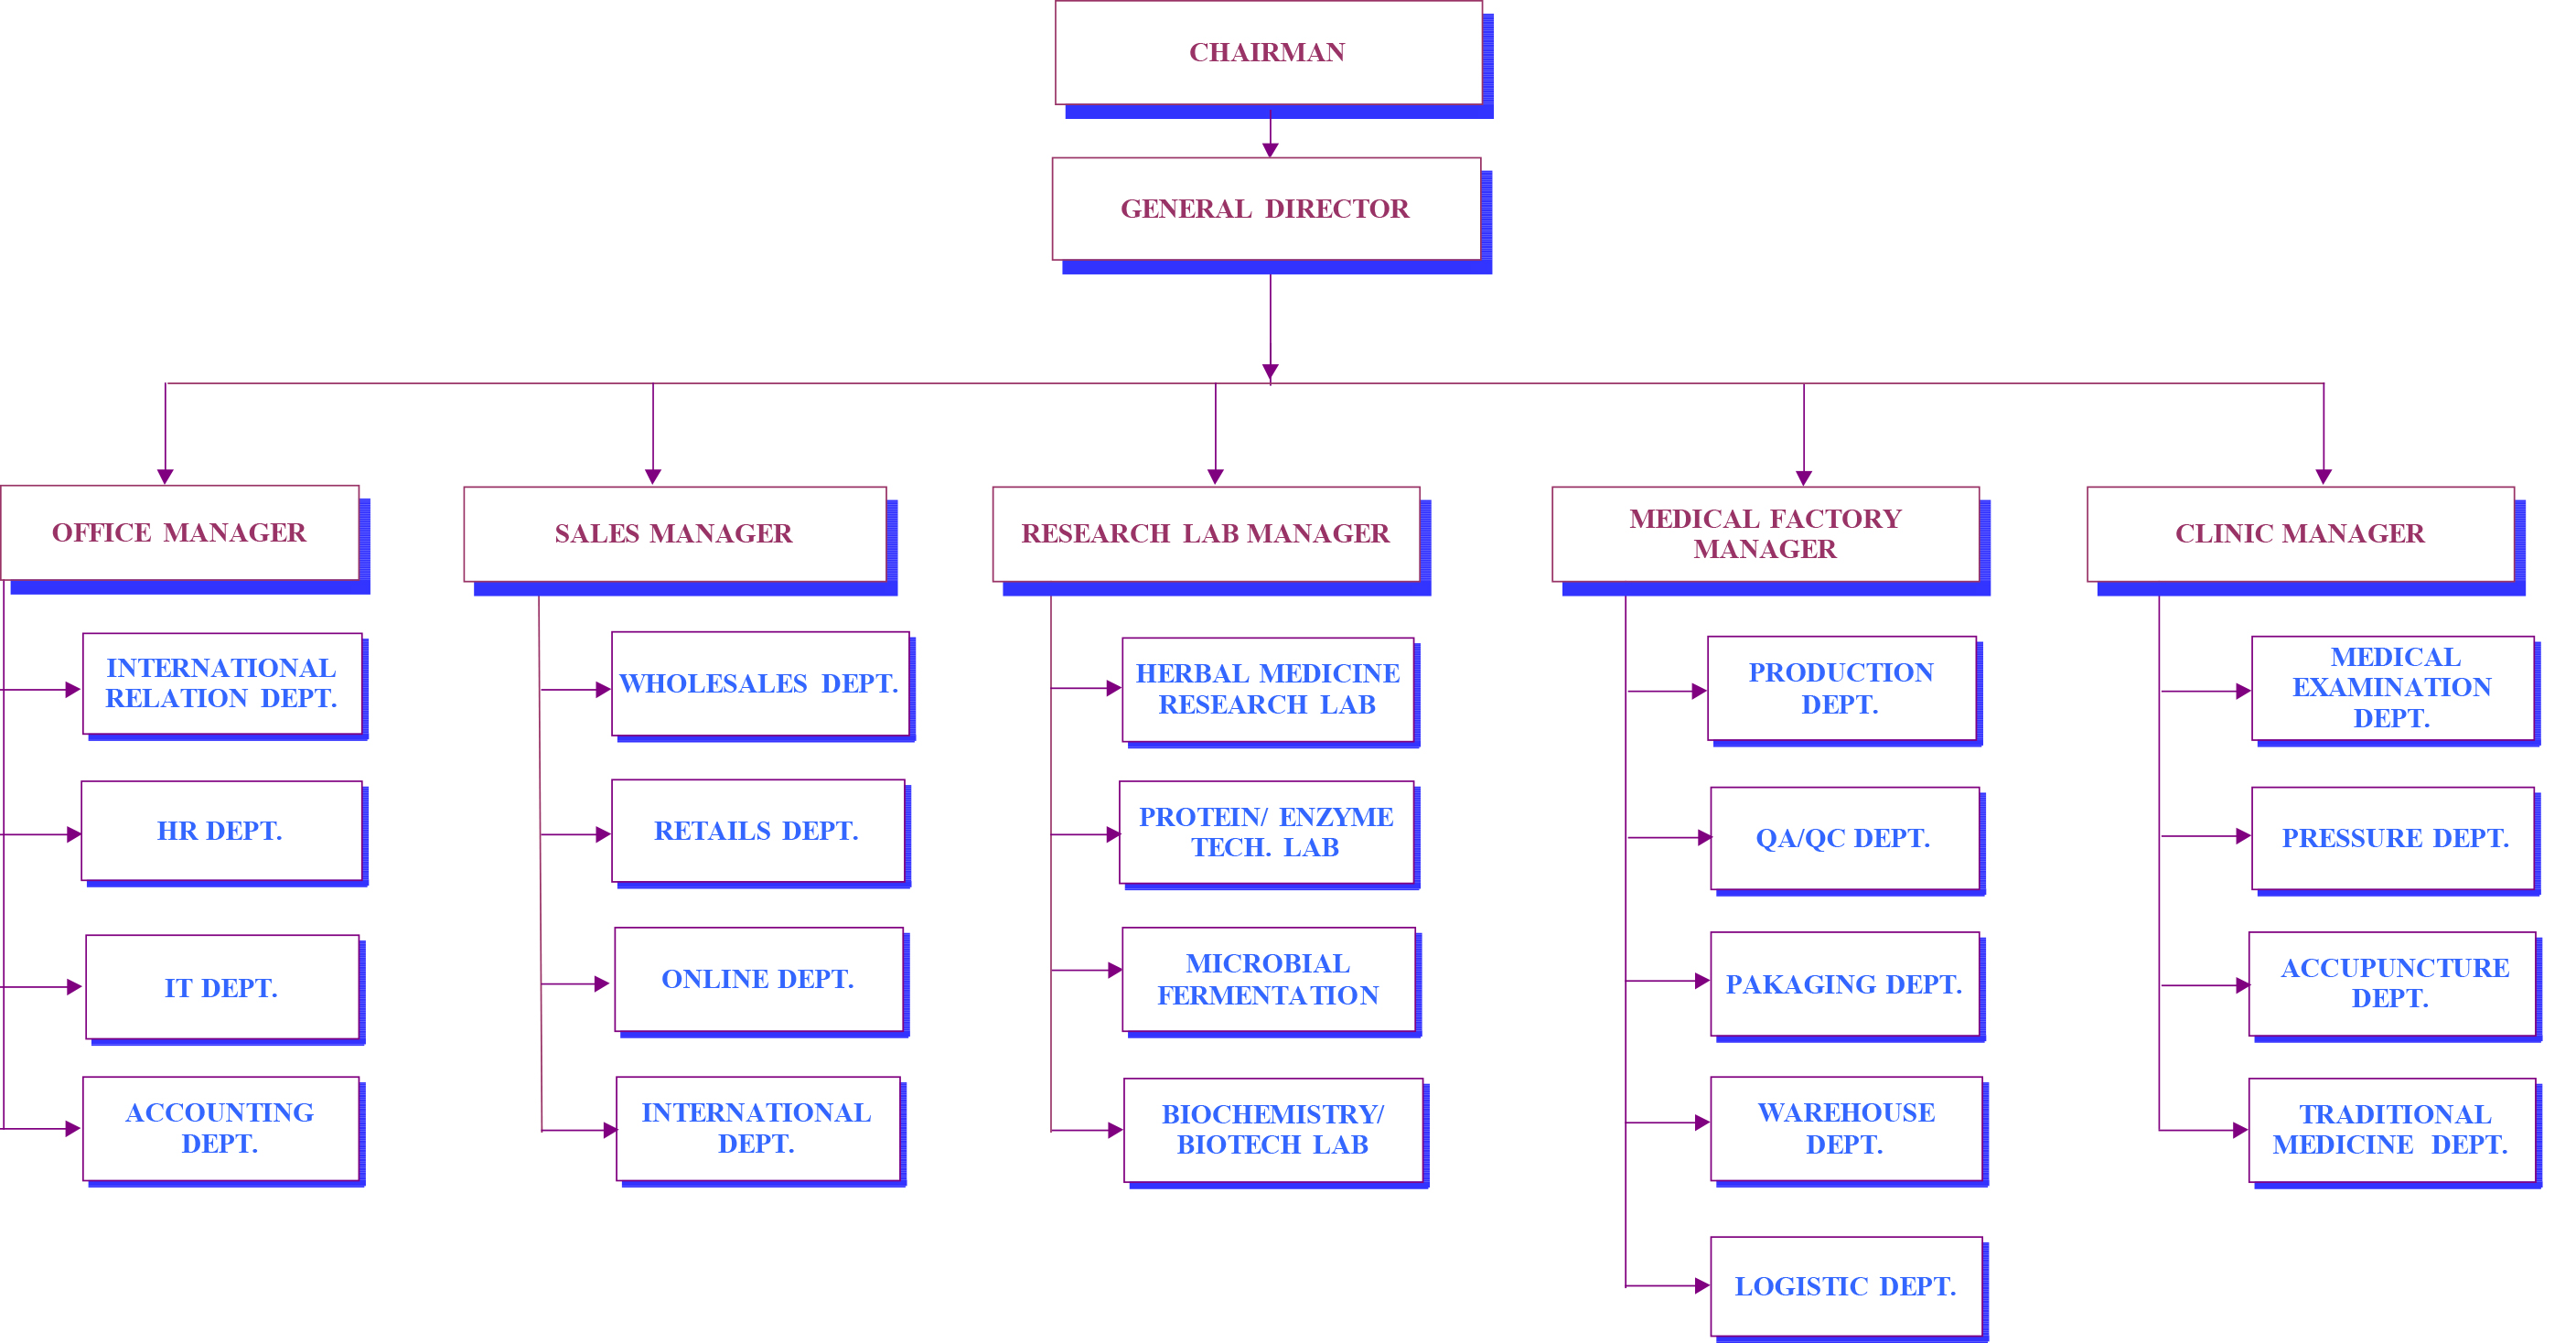 DAIBIO Organization Chart